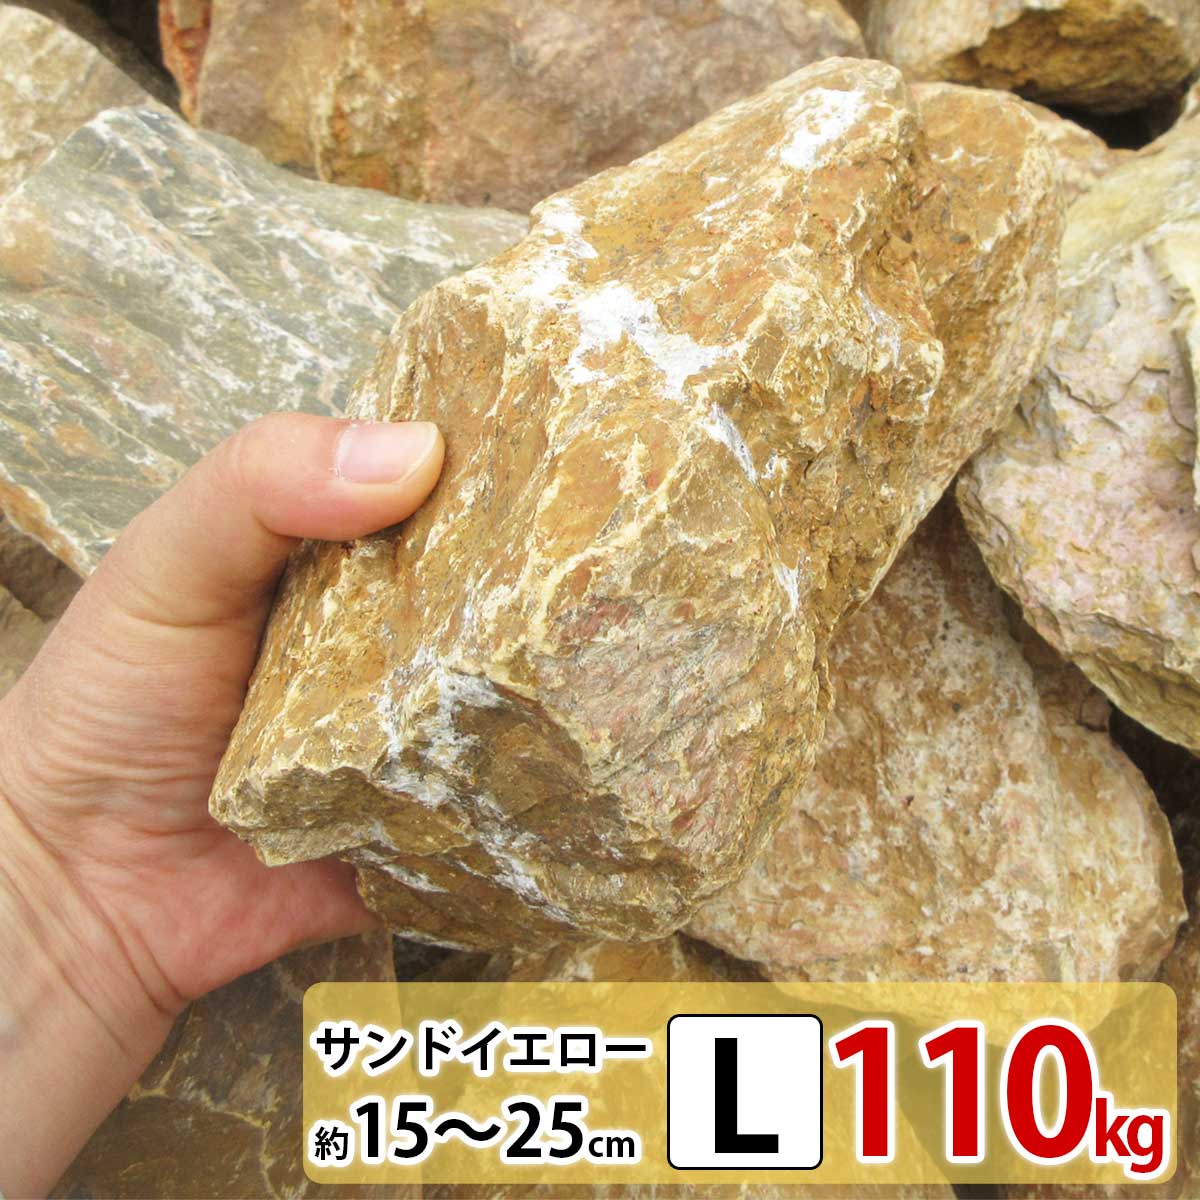 庭石 大きめ ロックガーデン 石 割栗石 イエロー L 110kg (22kgx5箱) ガーデニング 石 ガーデンロック 石 クラッシュ…